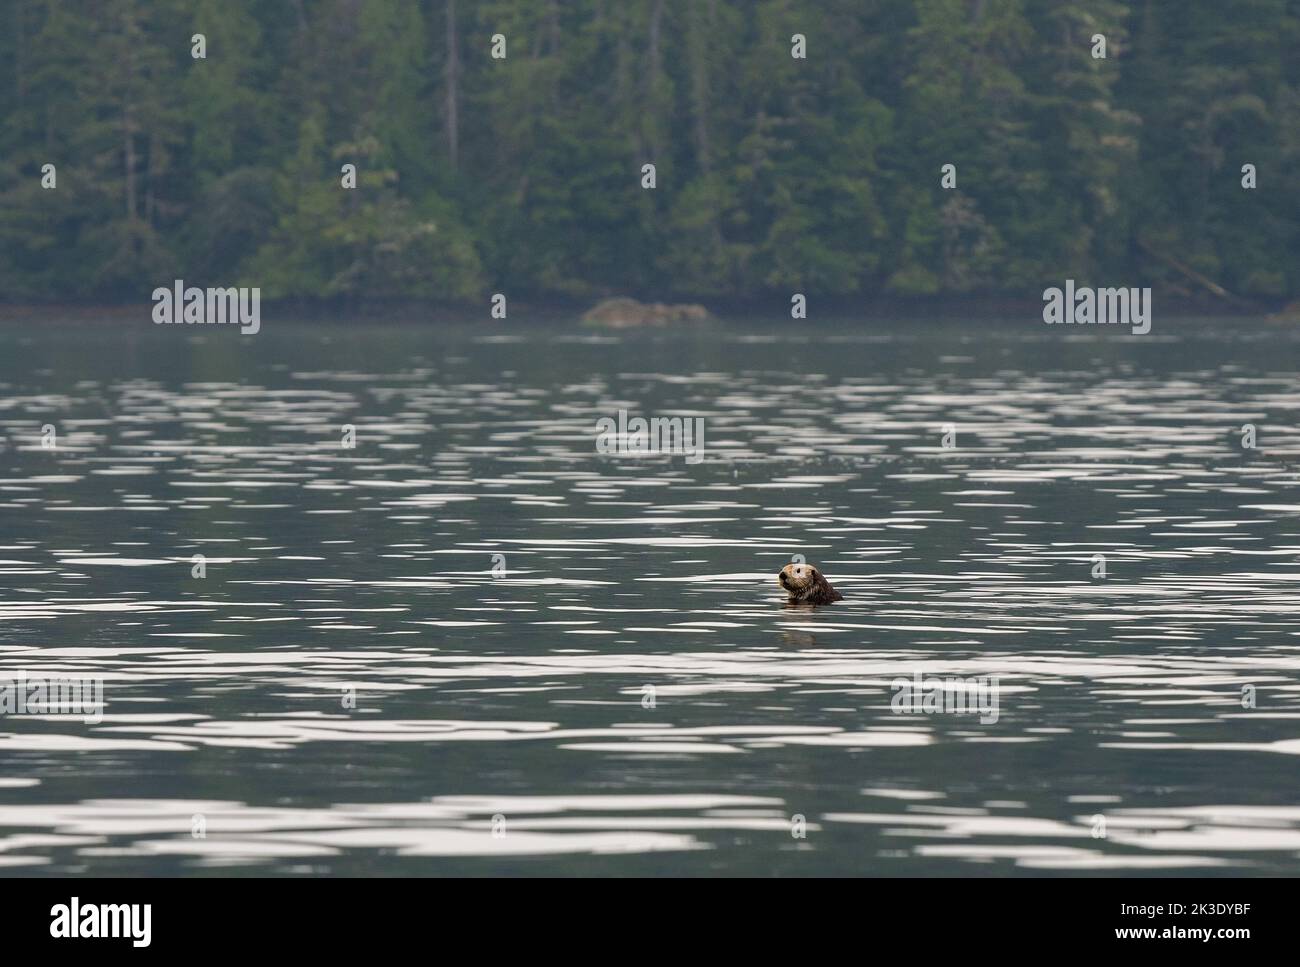 Loutre de mer (Enhydra lutris) avec tête hors de l'eau, Tofino, île de Vancouver, Colombie-Britannique, Canada. Accent sur la loutre de mer. Banque D'Images